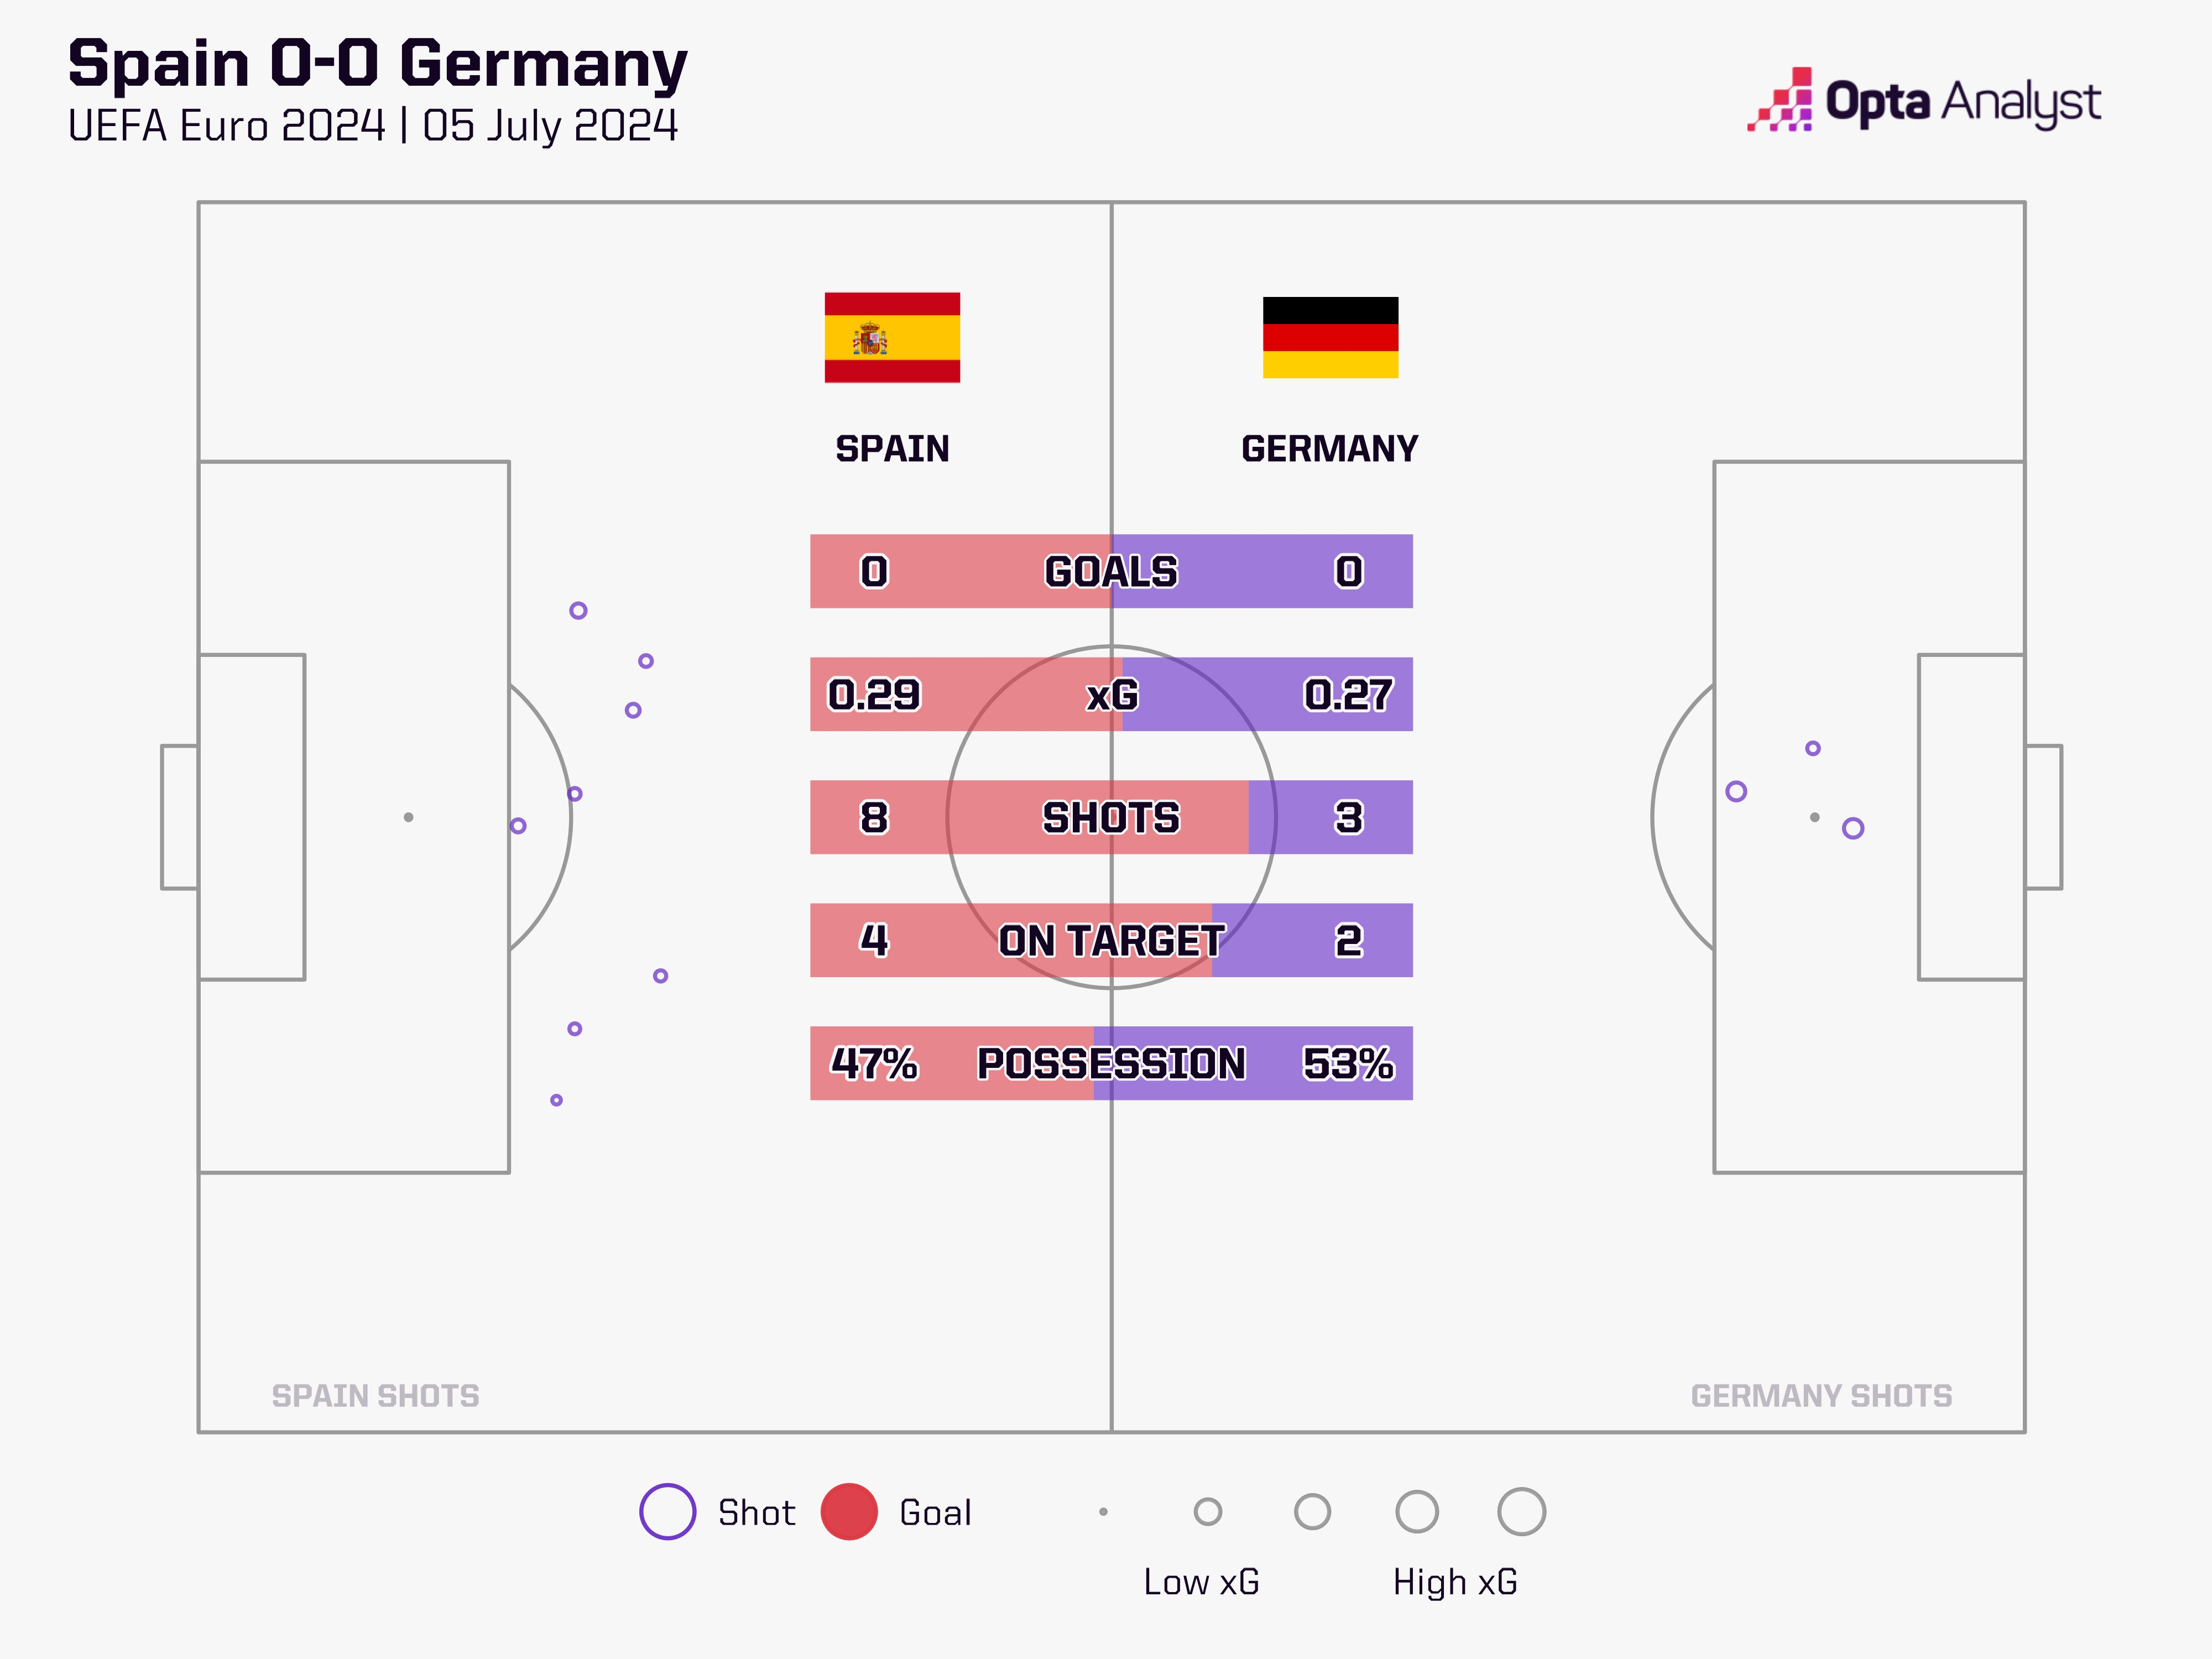 德国vs西班牙半场结束，德国半场射门全在禁区内&西班牙全禁区外